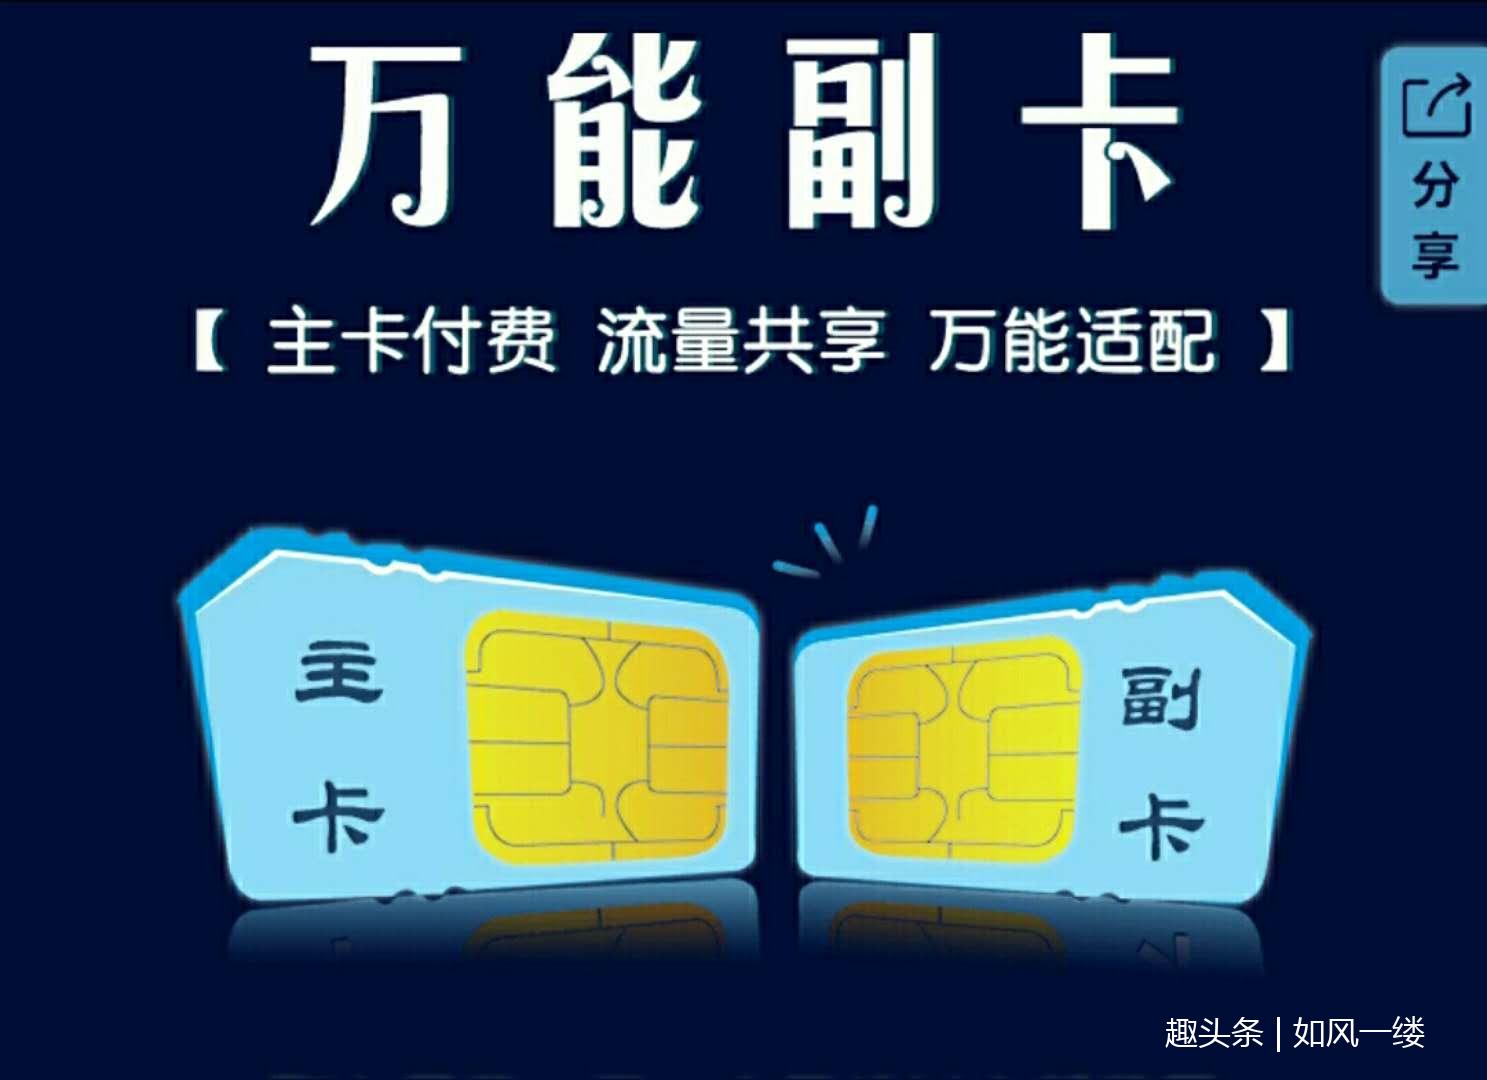 中国移动推出万能副卡业务 主卡付费 流量